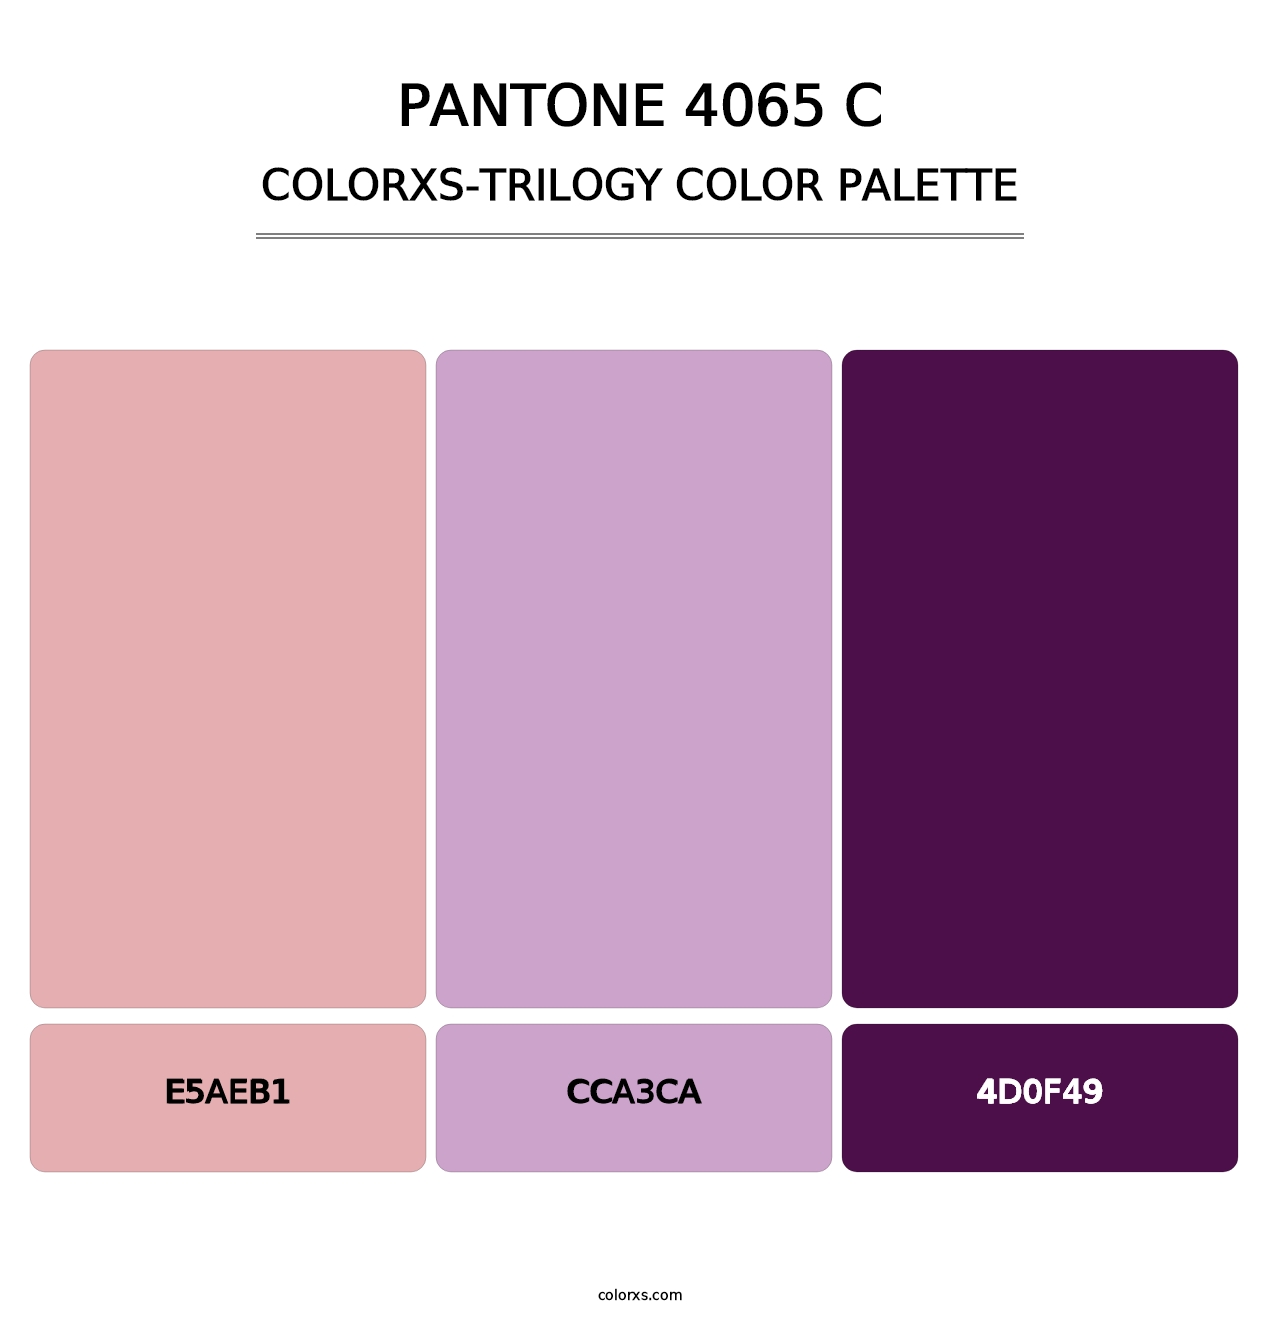 PANTONE 4065 C - Colorxs Trilogy Palette